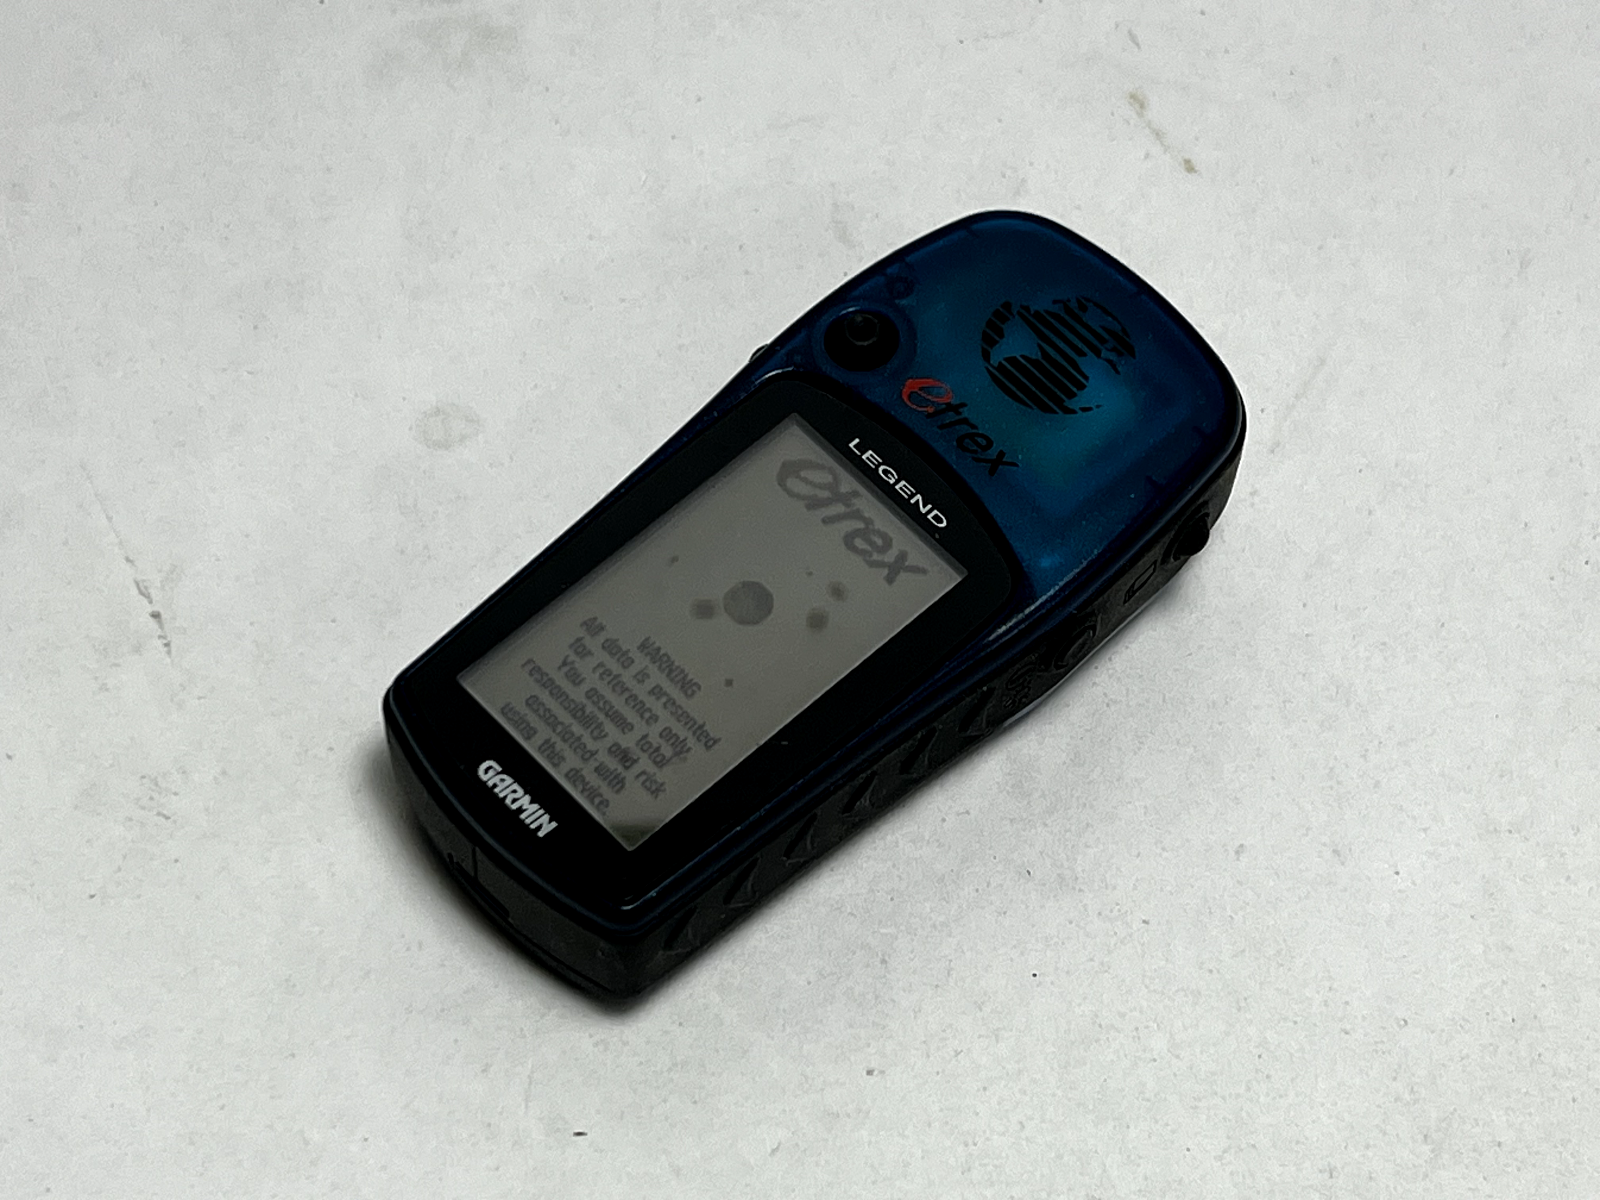 Garmin eTrex Legend Blue Handheld LCD Display Waterproof Hiking GPS Navigator - $28.70